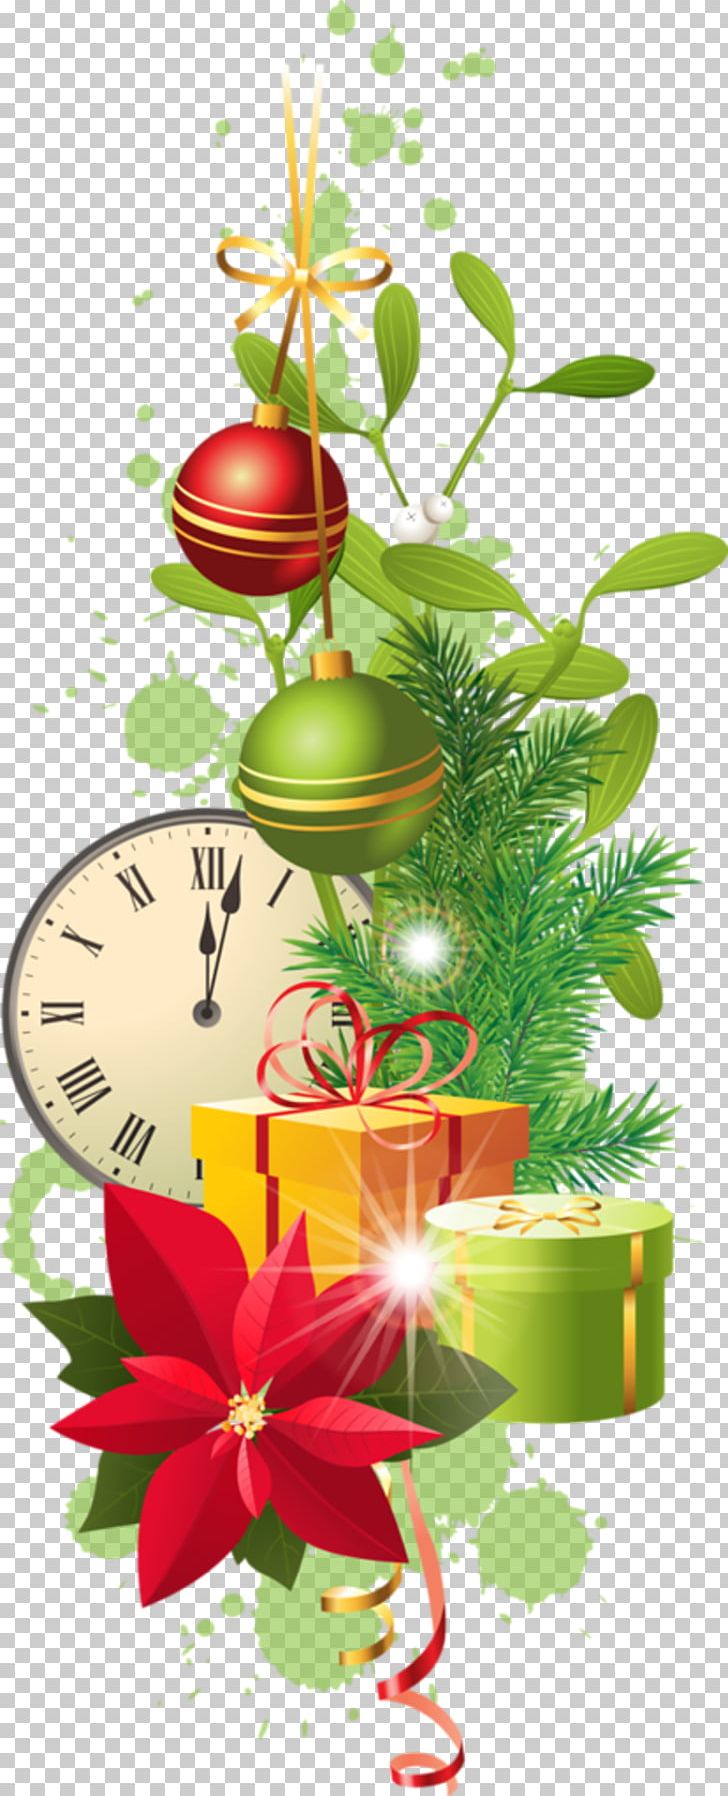 Stock Photography Christmas Card Christmas Tree PNG, Clipart, Branch, Christmas, Christmas Card, Christmas Decoration, Christmas Ornament Free PNG Download